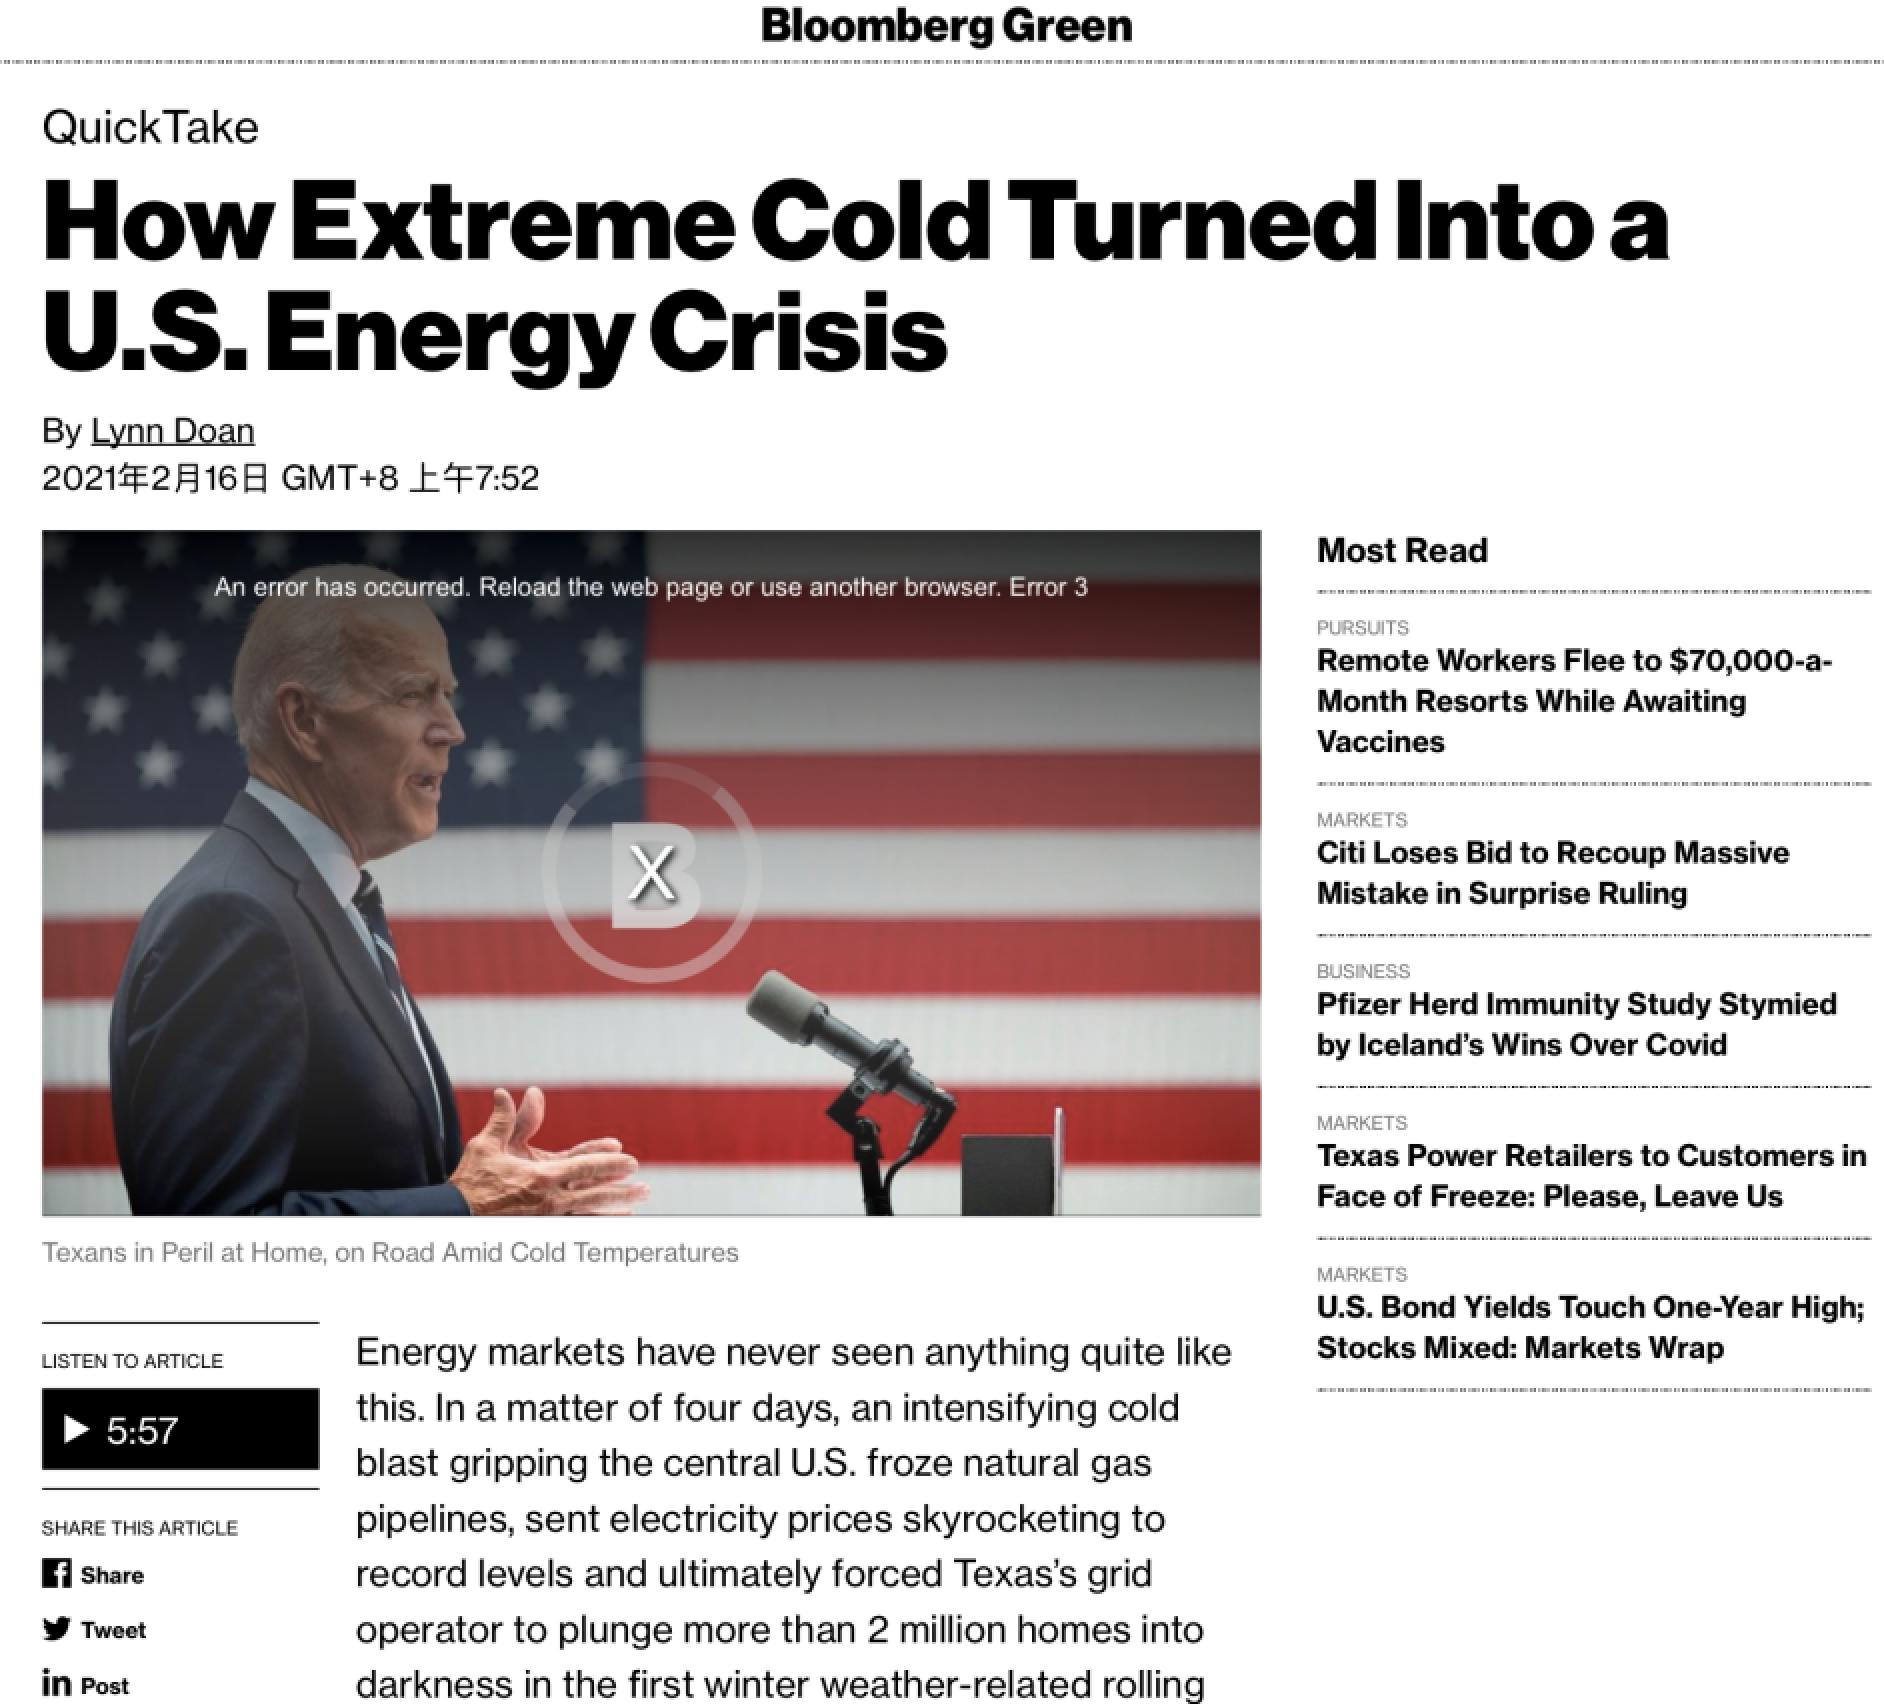 北美观察丨能源危机暴露基础设施顽疾 超500万美国人黑暗中过冬